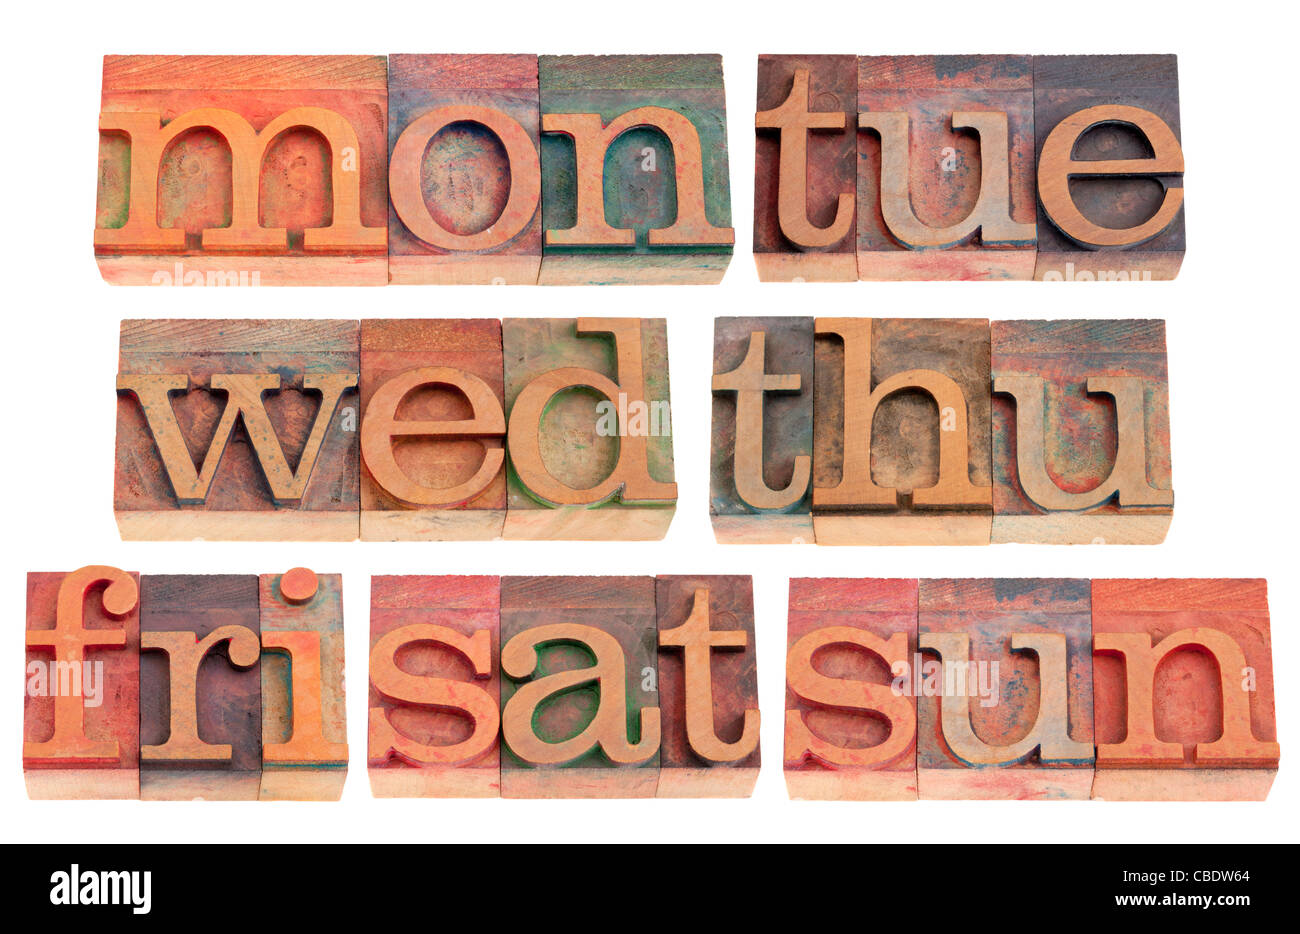 7 jours de semaine (3 premières lettres) dans la typographie vintage wood blocks, isolated on white Banque D'Images